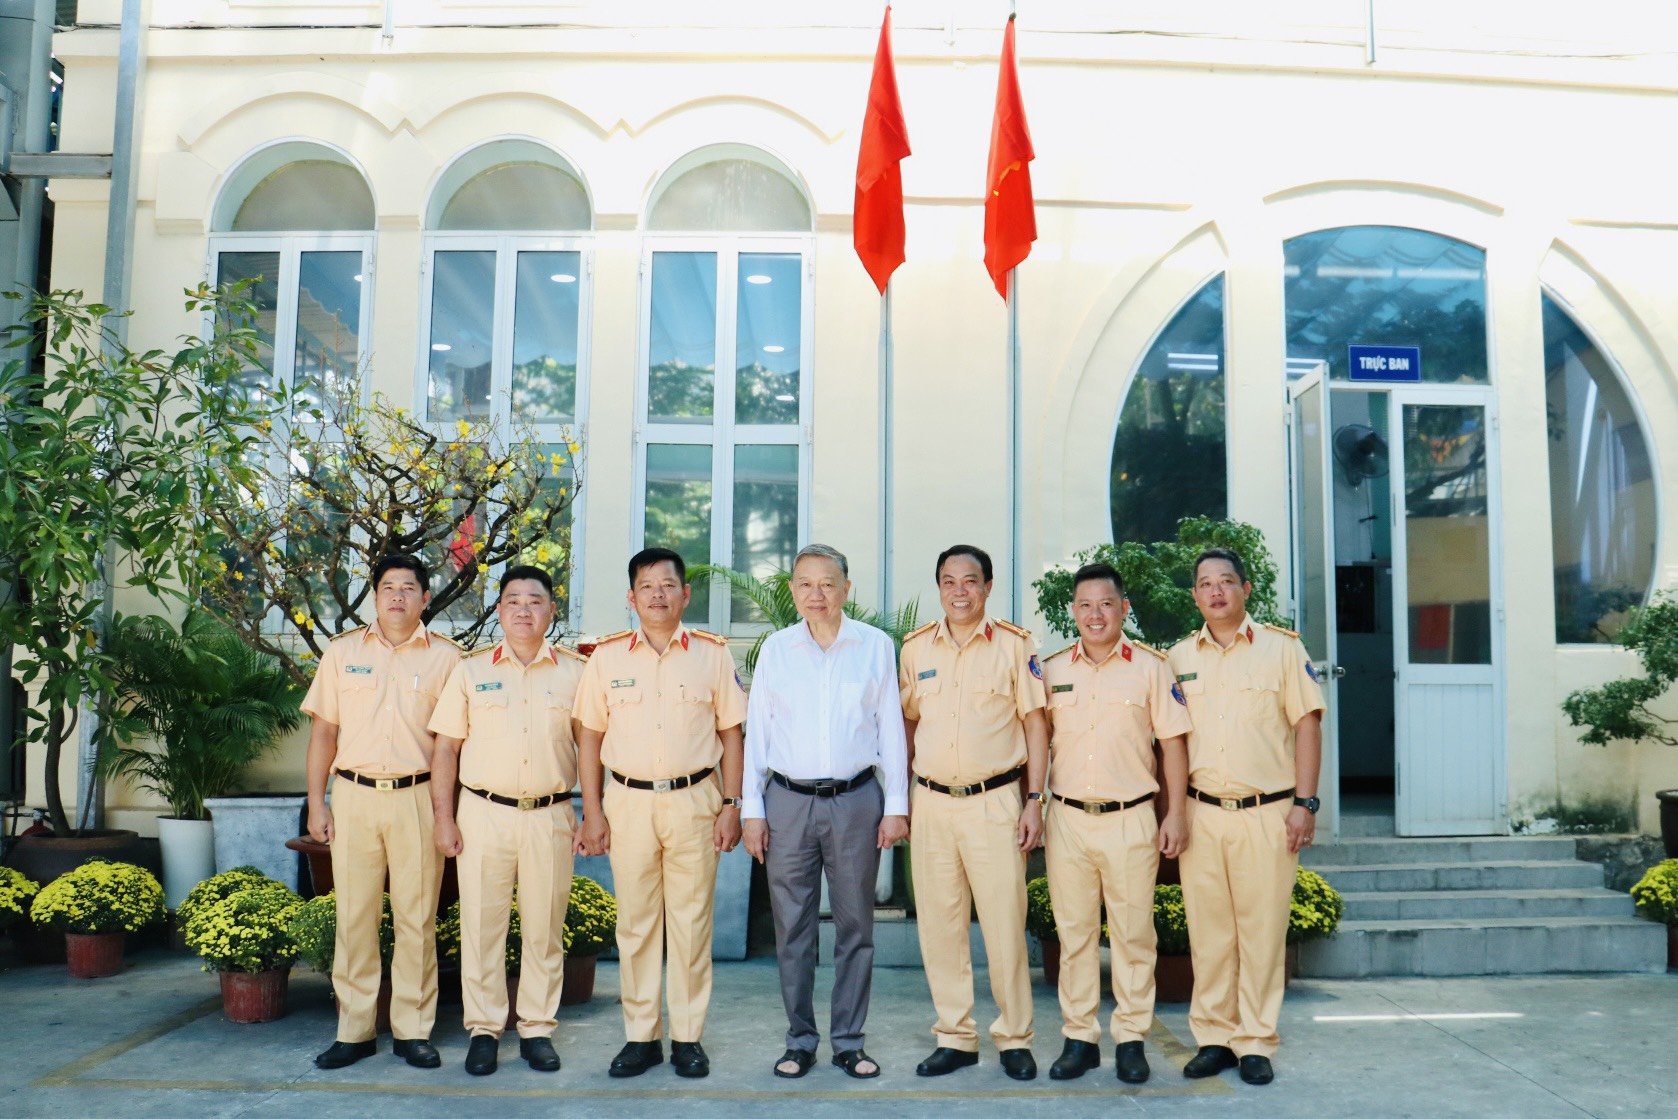 đồng chí Đại Tướng Tô Lâm – Ủy viên Bộ Chính trị - Bộ trưởng Bộ Công an chụp hình lưu niệm cùng với đại diện Ban Chỉ huy Phòng và Ban Chỉ huy Đội Tuần tra dẫn đoàn